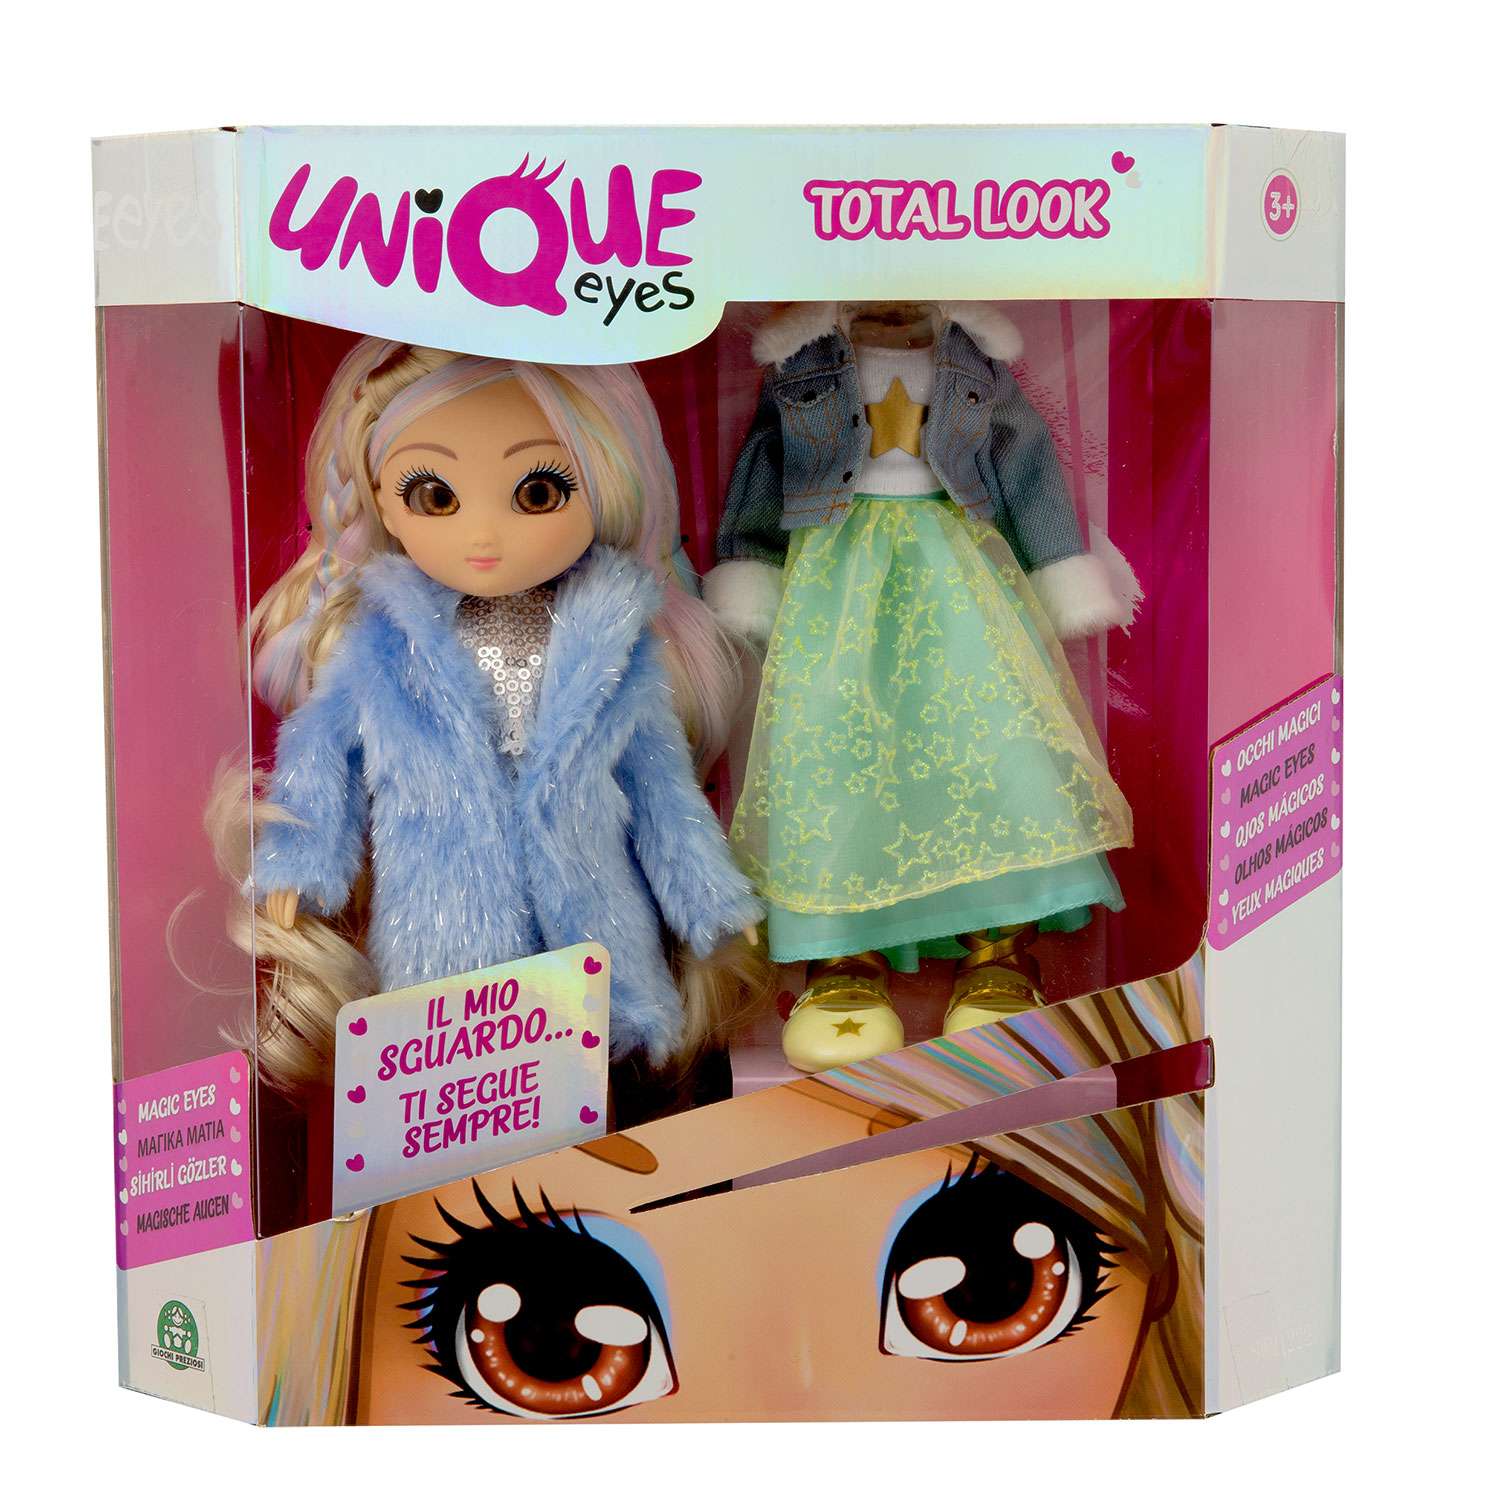 Unique кукла. Unique Eyes кукла. Куклы Юник айс. Одежда для куклы unique Eyes. Кукла unique Eyes детский мир Ставрополь.